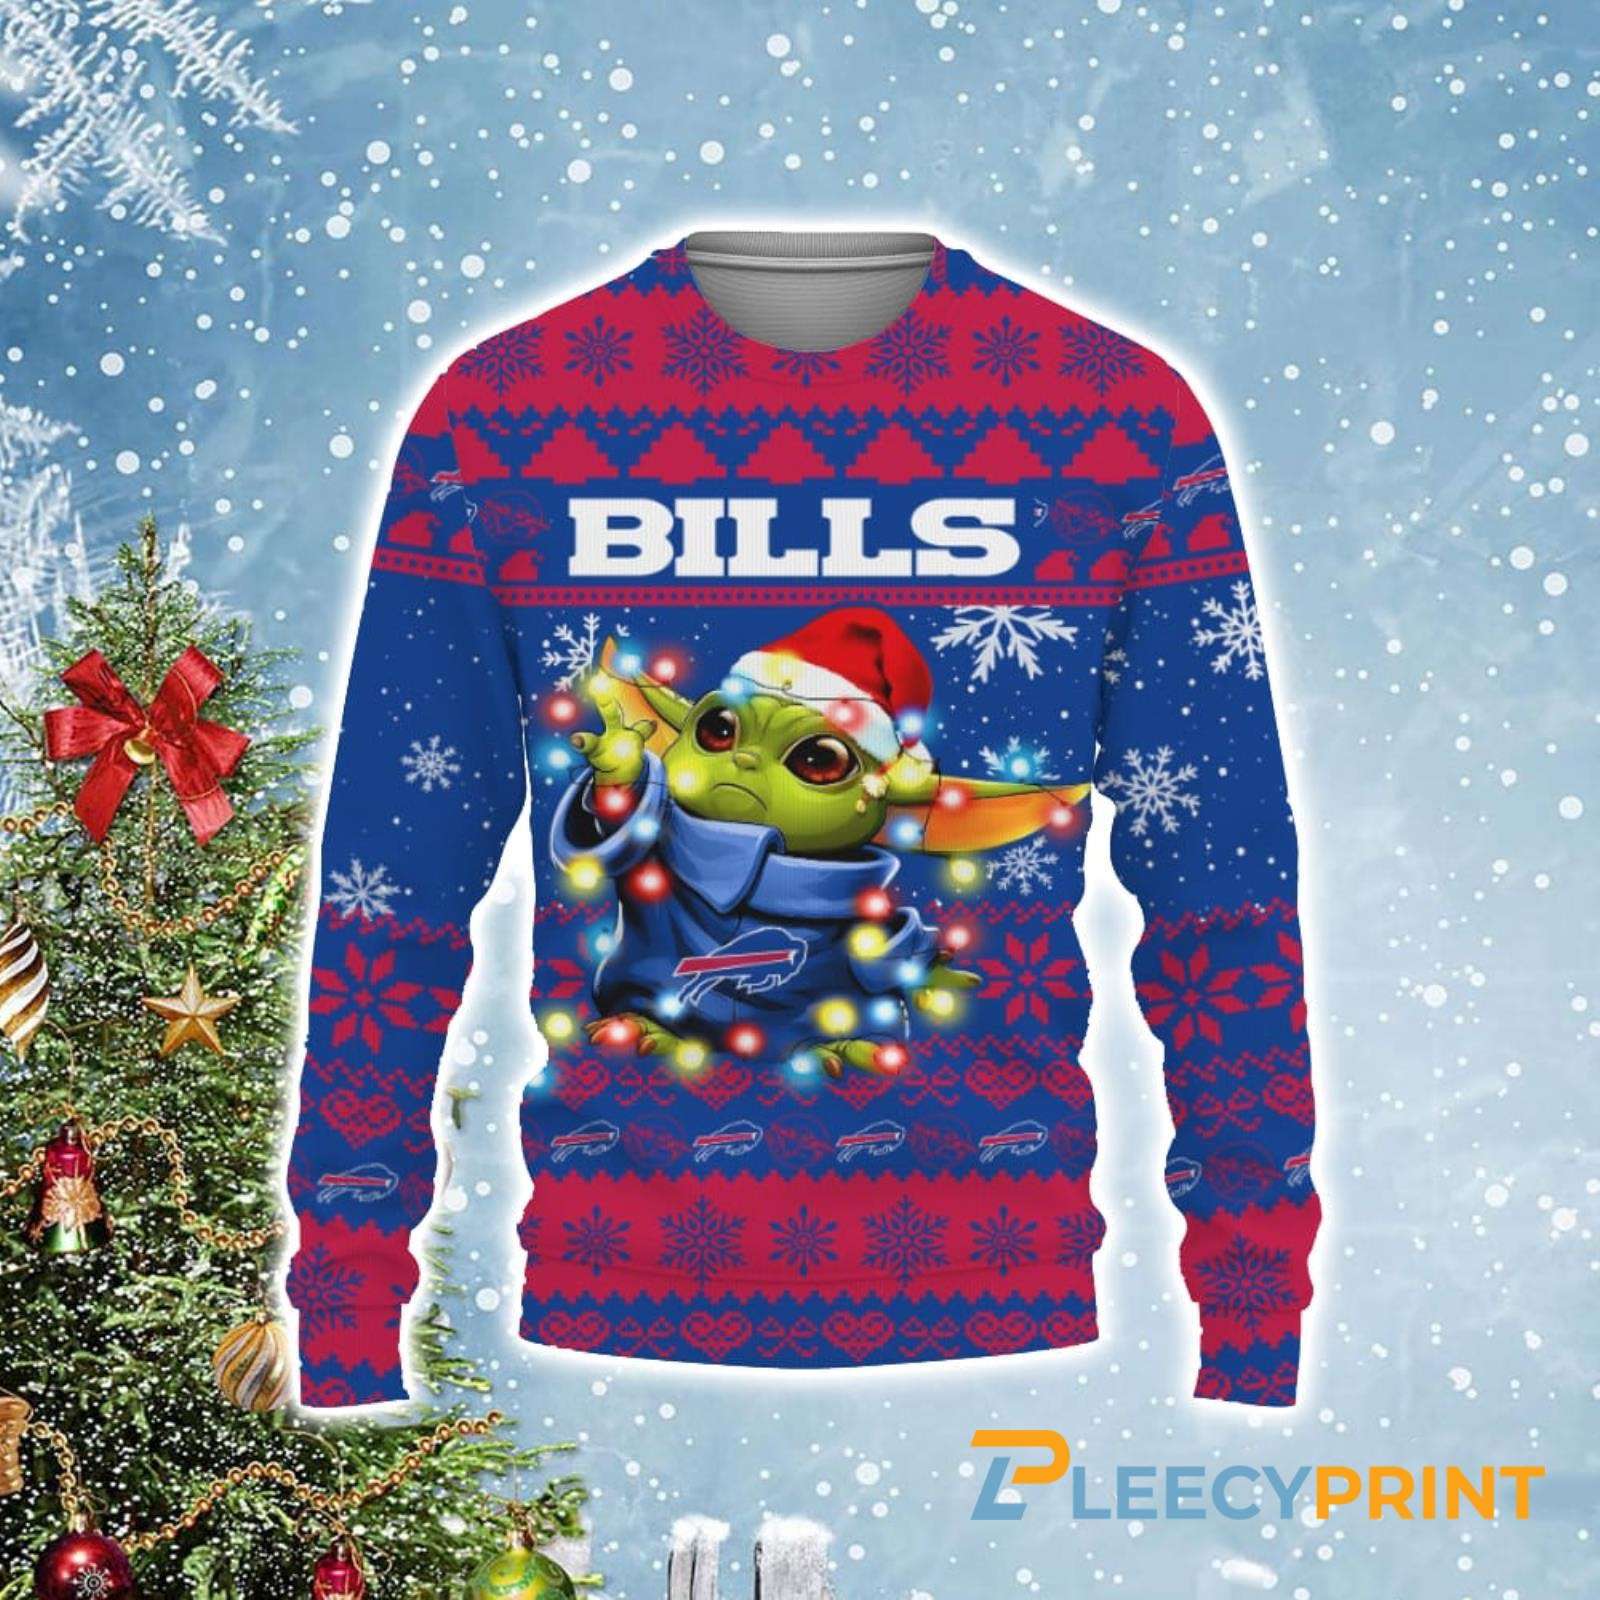 Buffalo Bills Baby Yoda Star Wars Christmas Light Up Ugly Sweater - Buffalo Bills Christmas Sweater